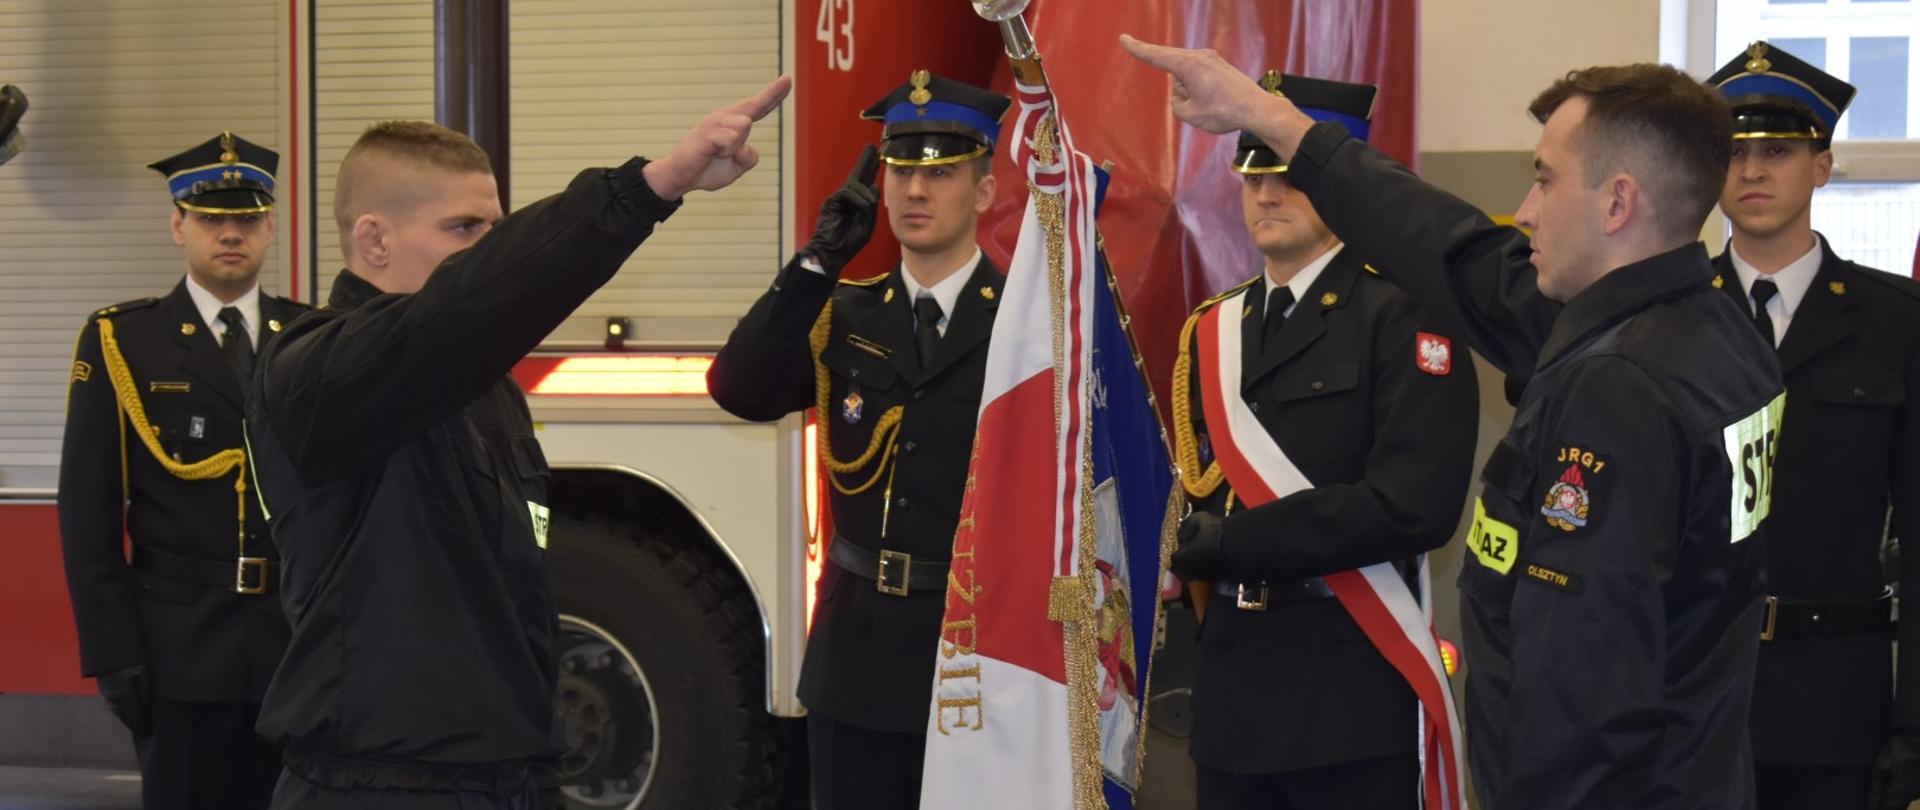 Ślubowanie nowych strażaków w JRG1 Olsztyn